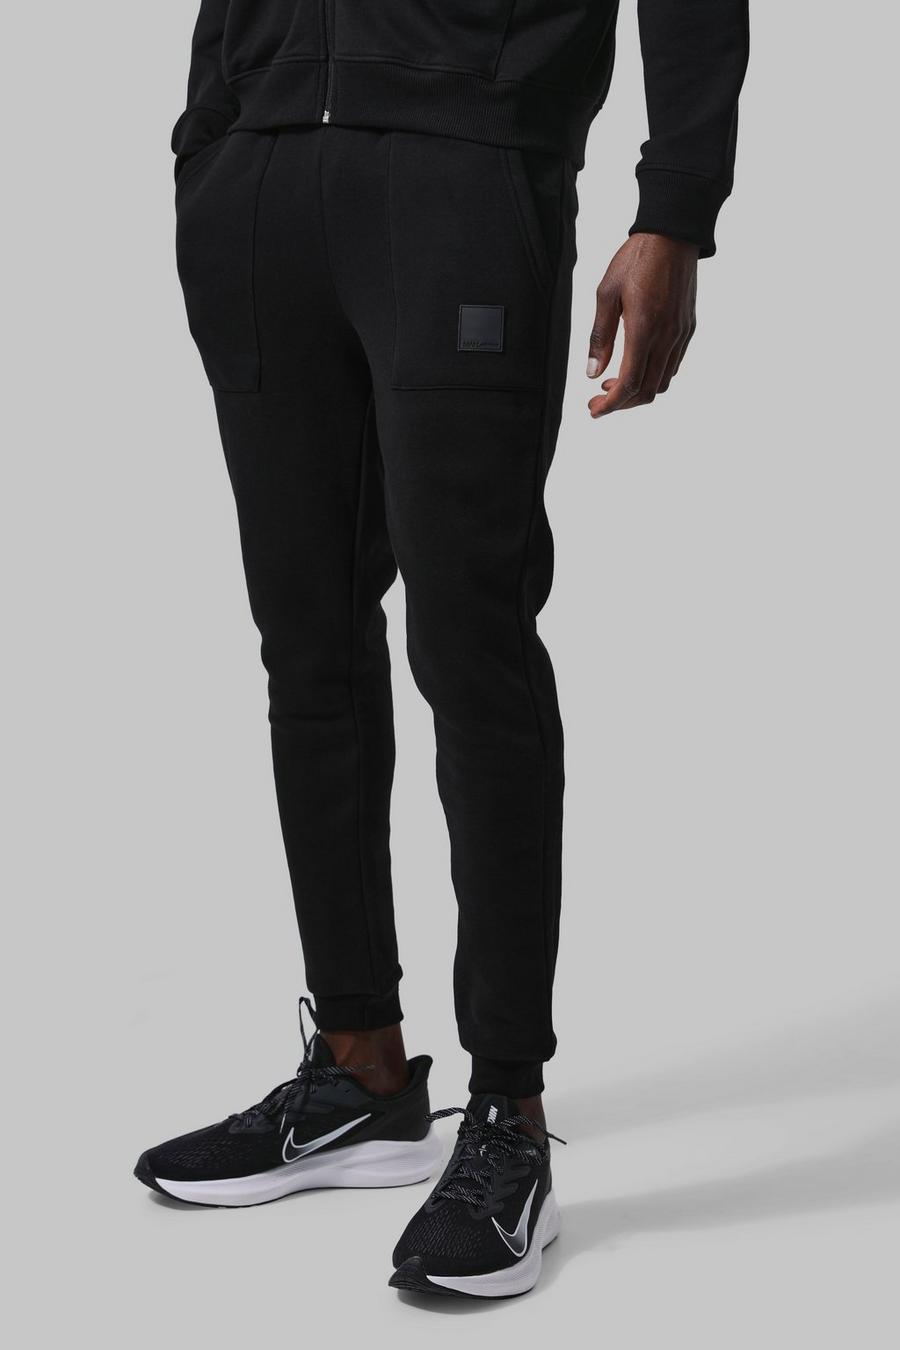 שחור מכנסיים ספורטיביים לחדר הכושר עם כיסים וכיתוב Man image number 1